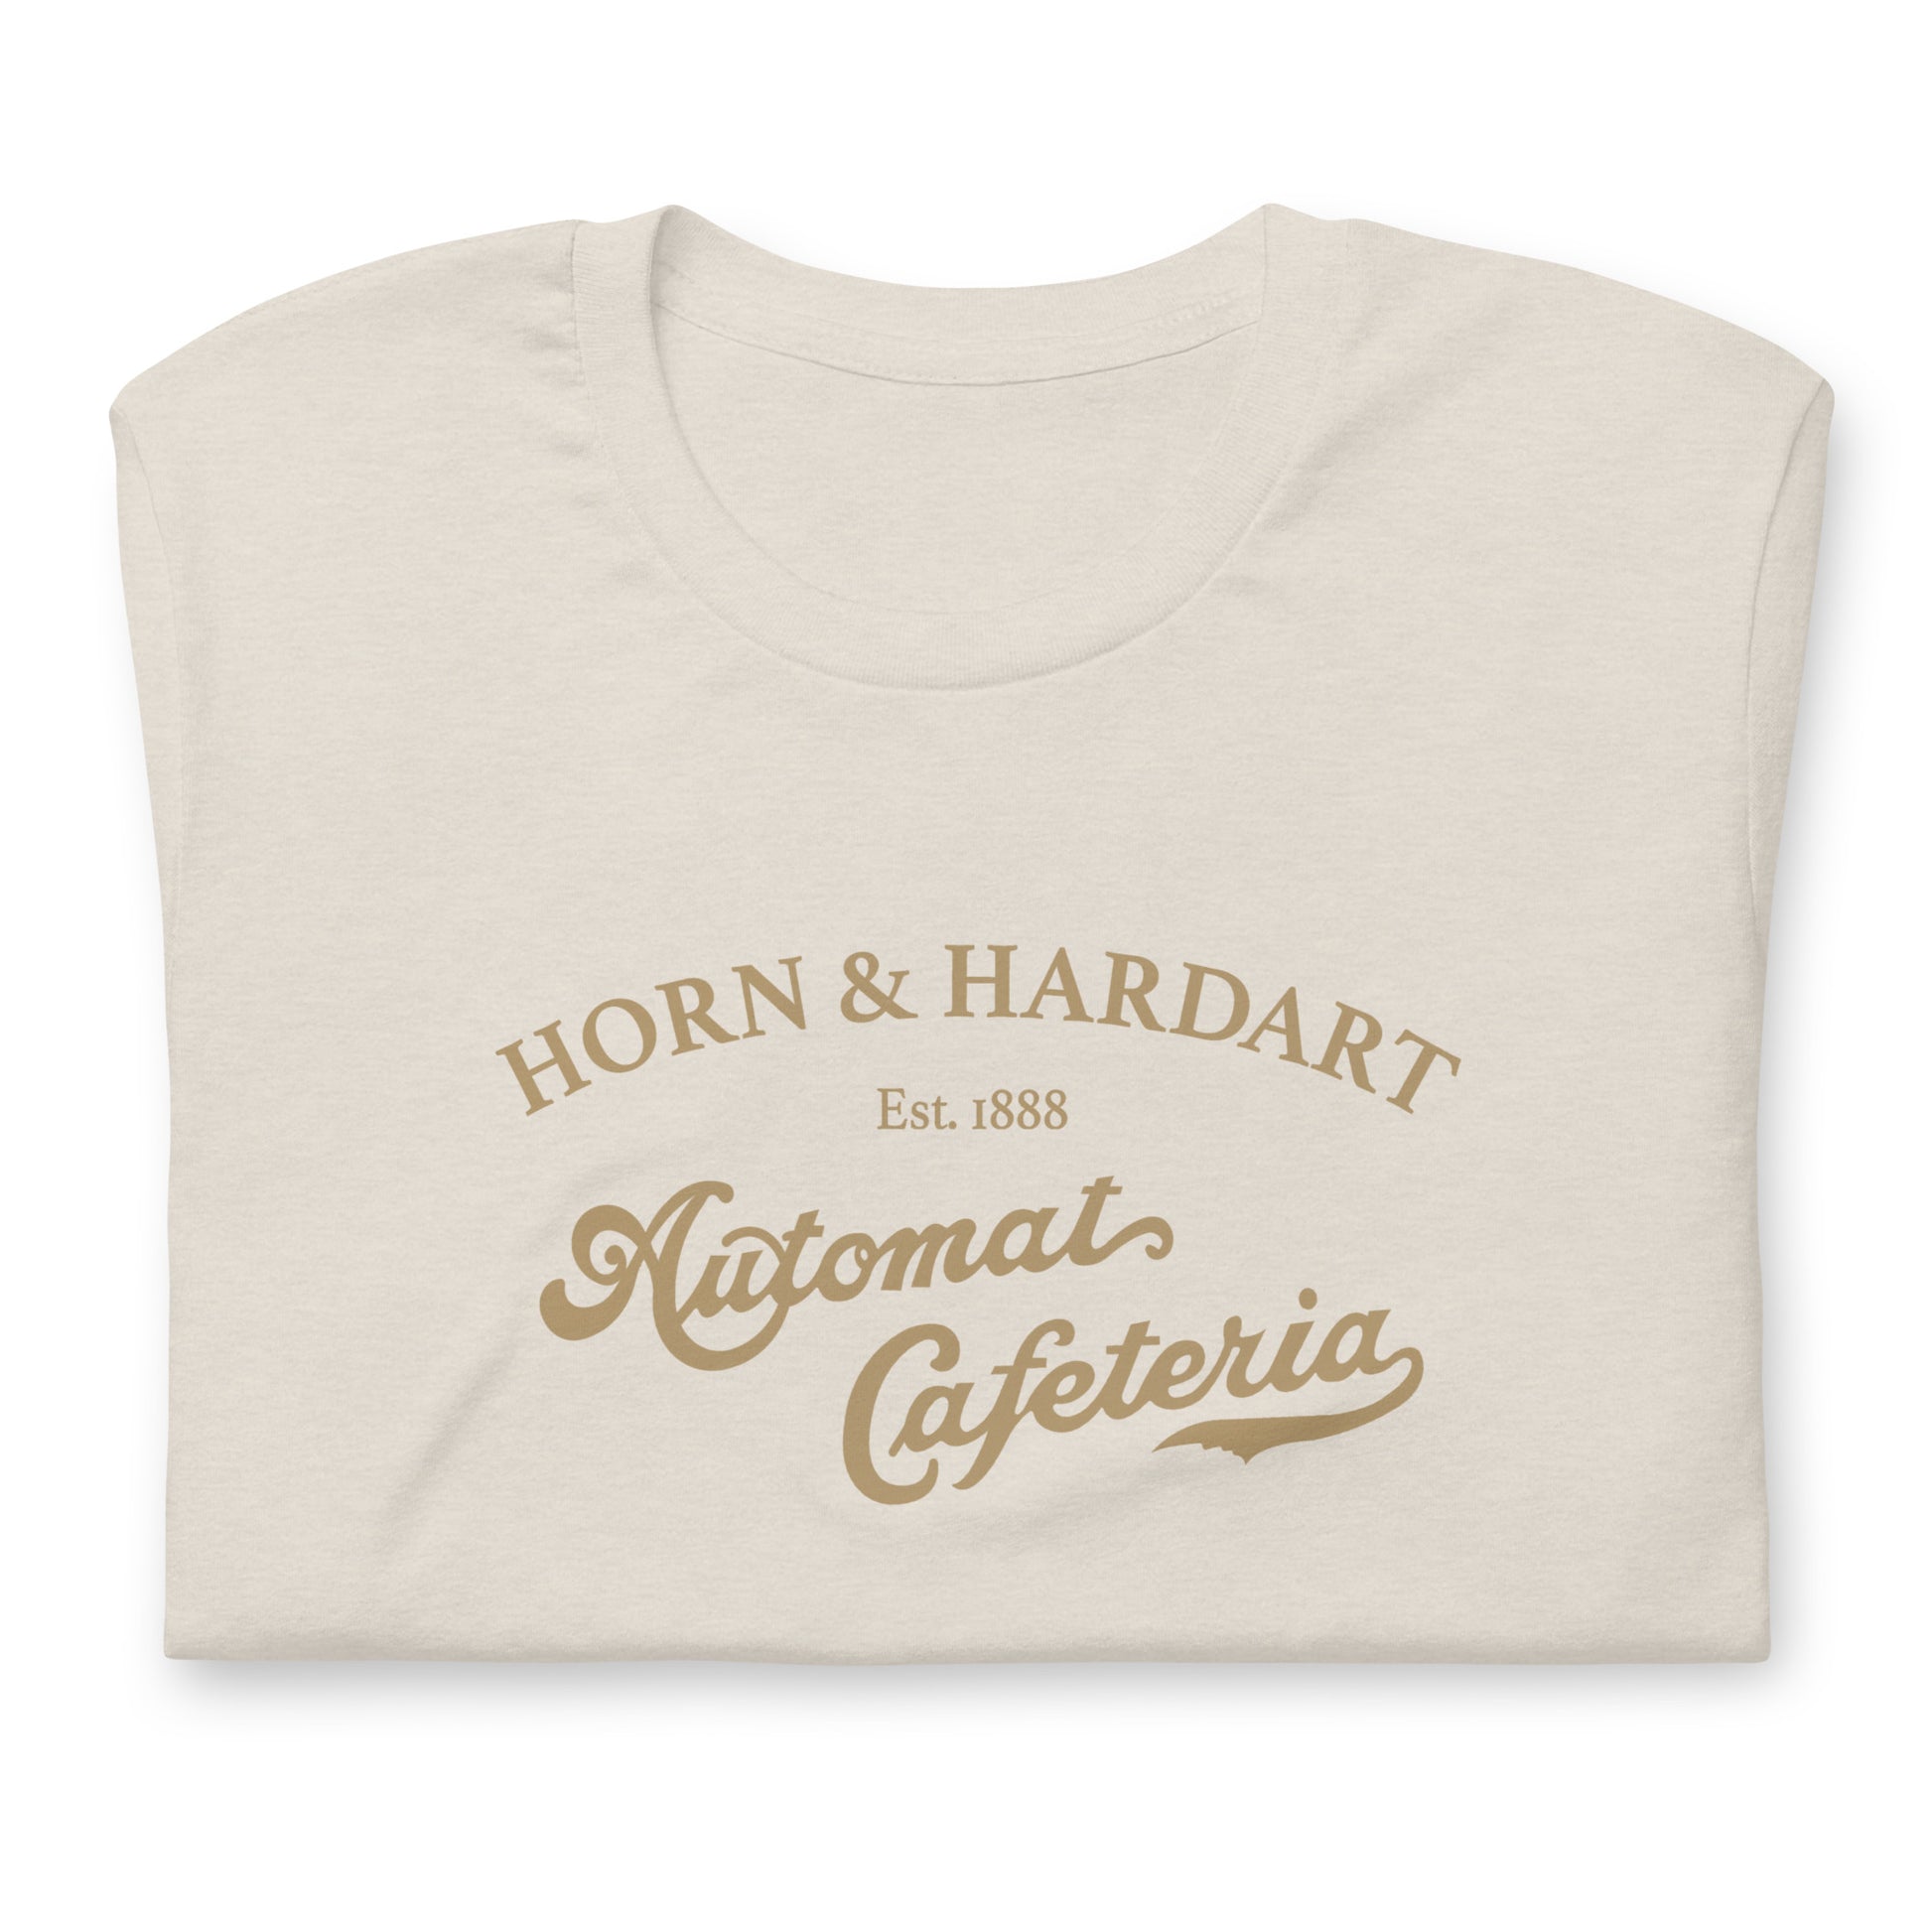 Horn & Hardart - Automat Cafeteria T-Shirt